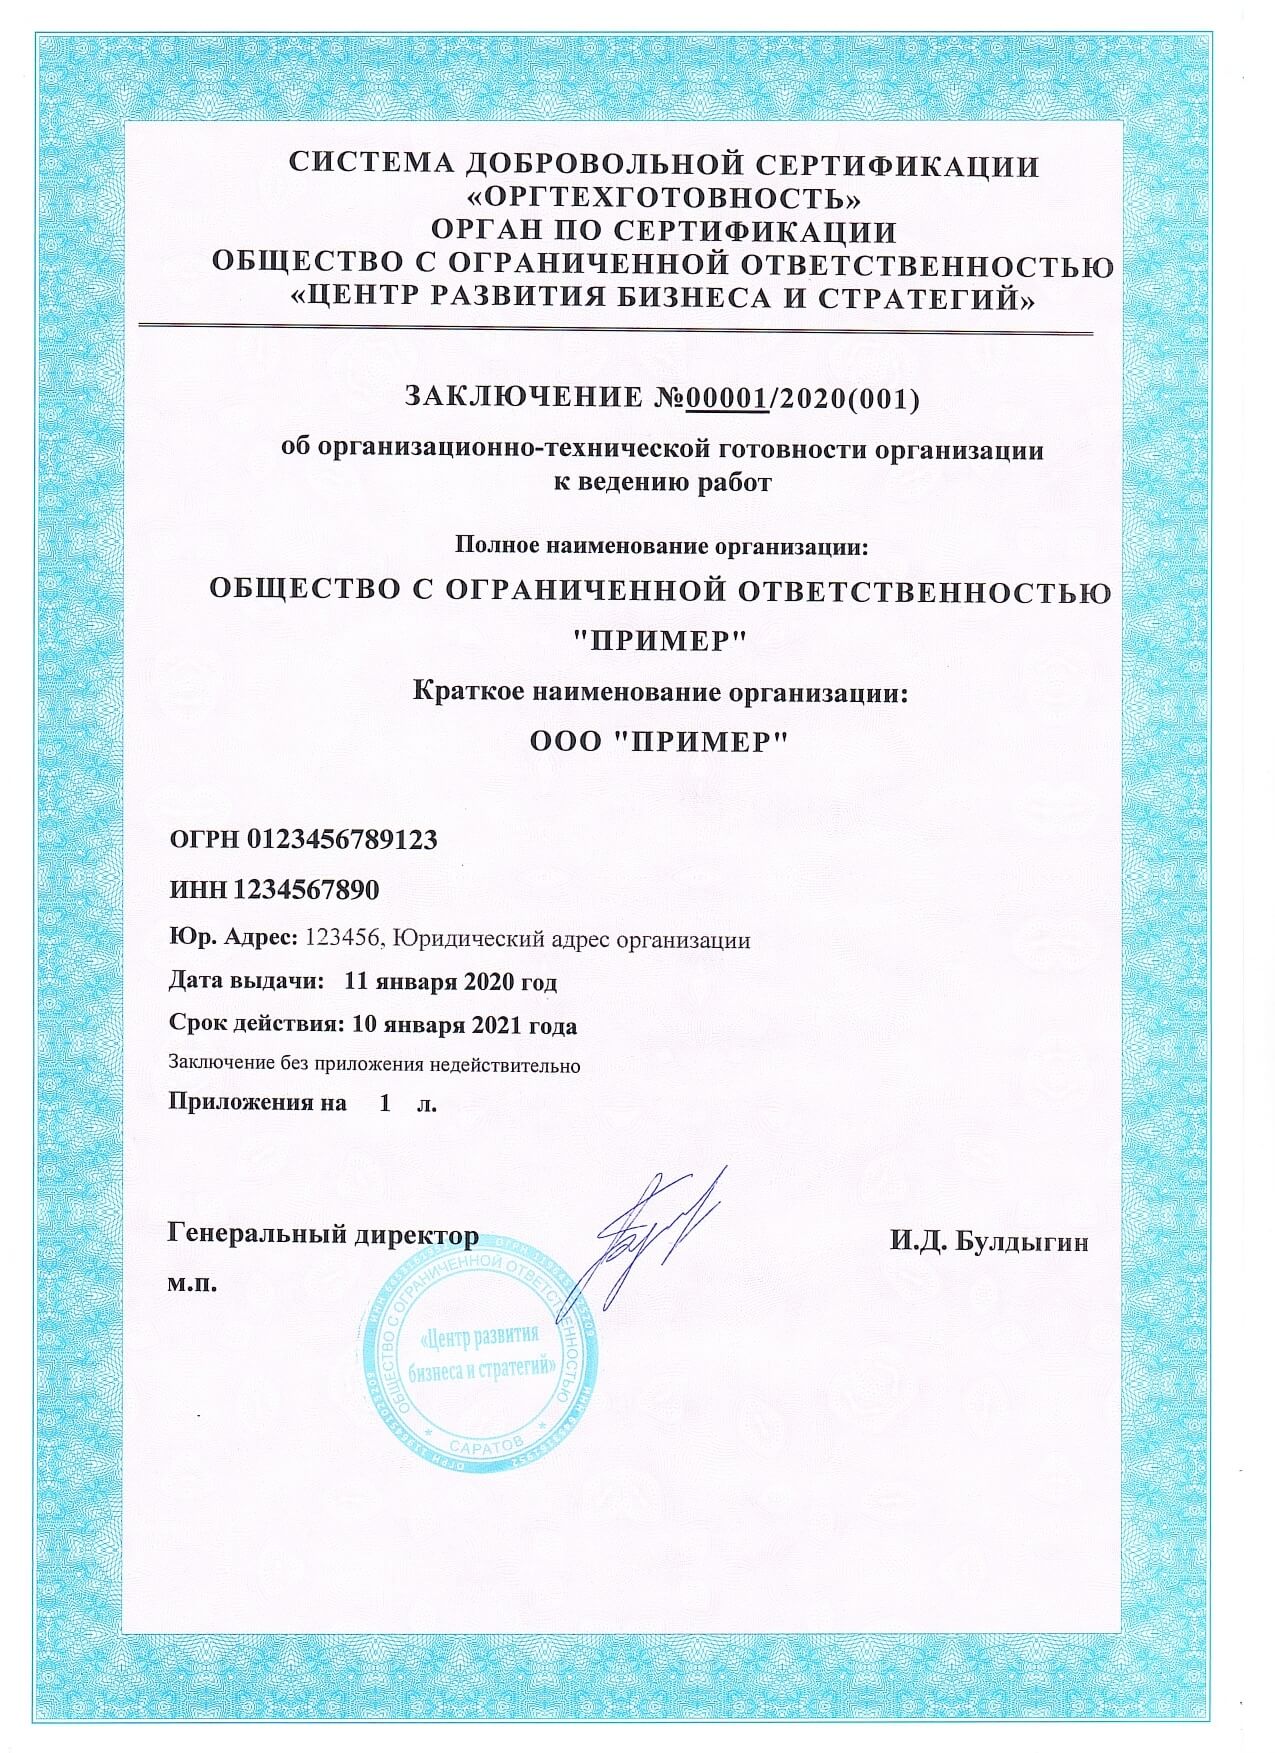 Свидетельство о соответствии требованиям технического регламента - 35 000 руб.